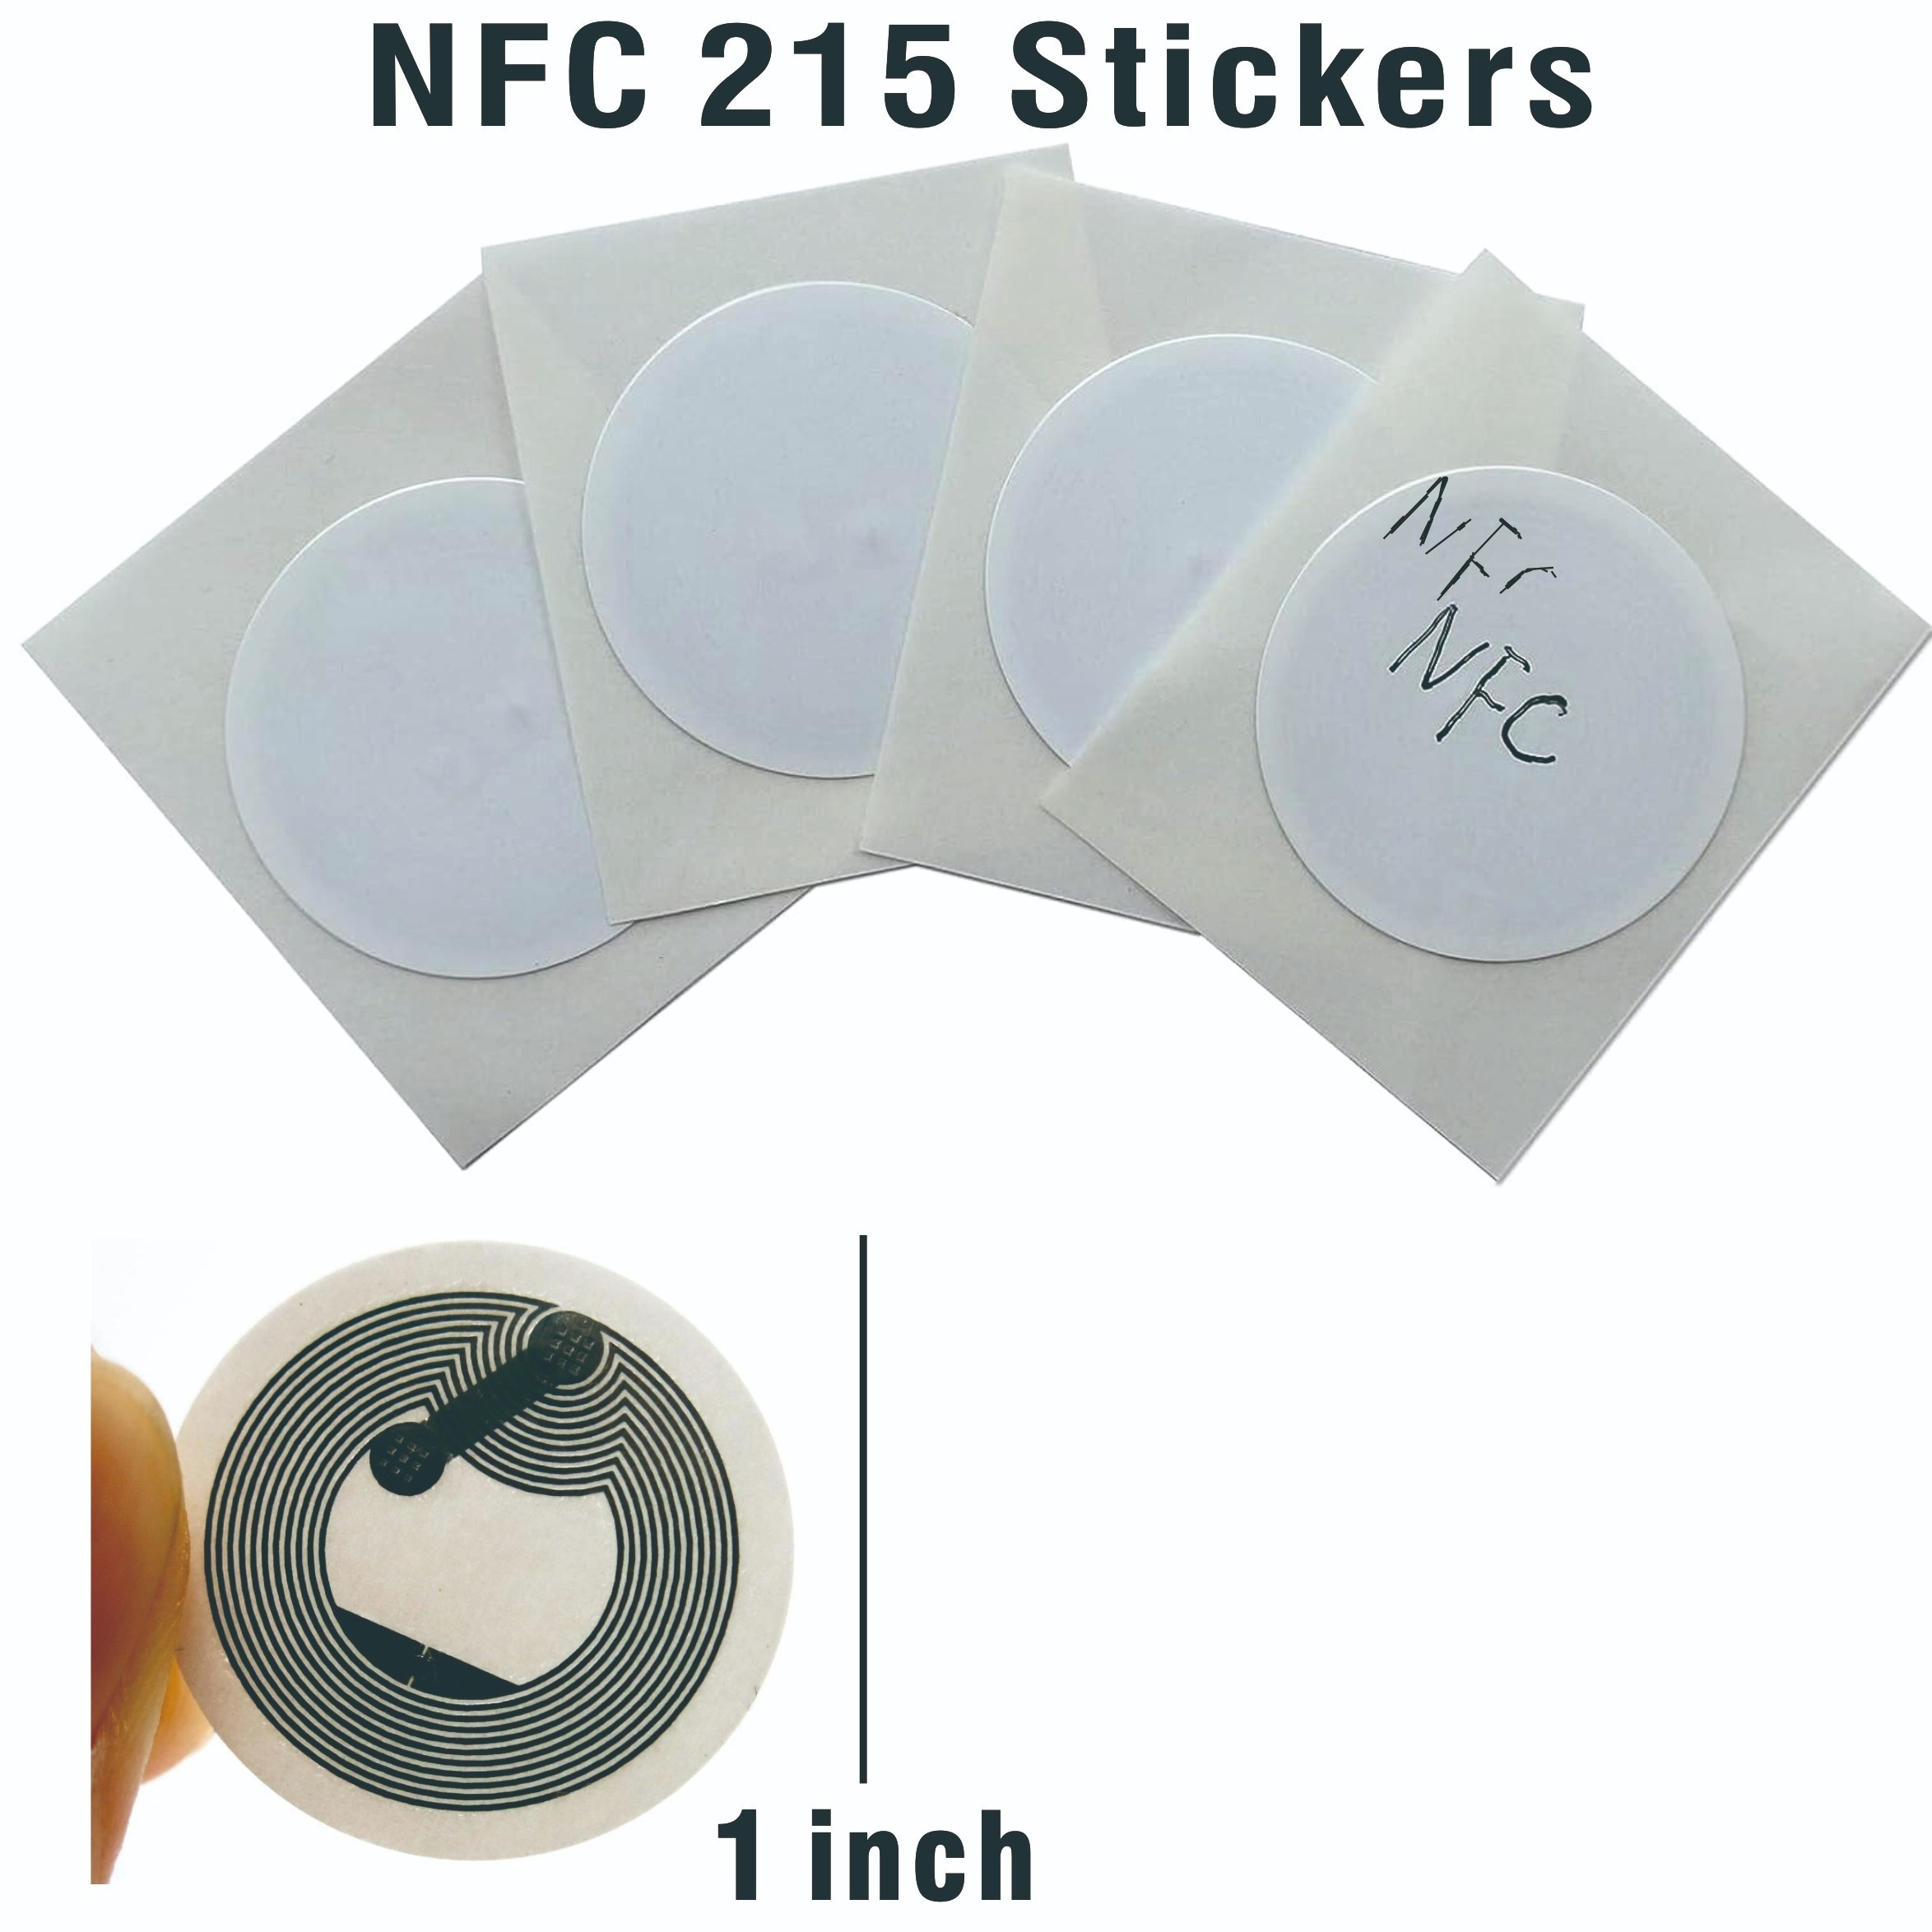  NFC Tags NFC Sticker Tags Ntag 215 NFC Cards NFC 215